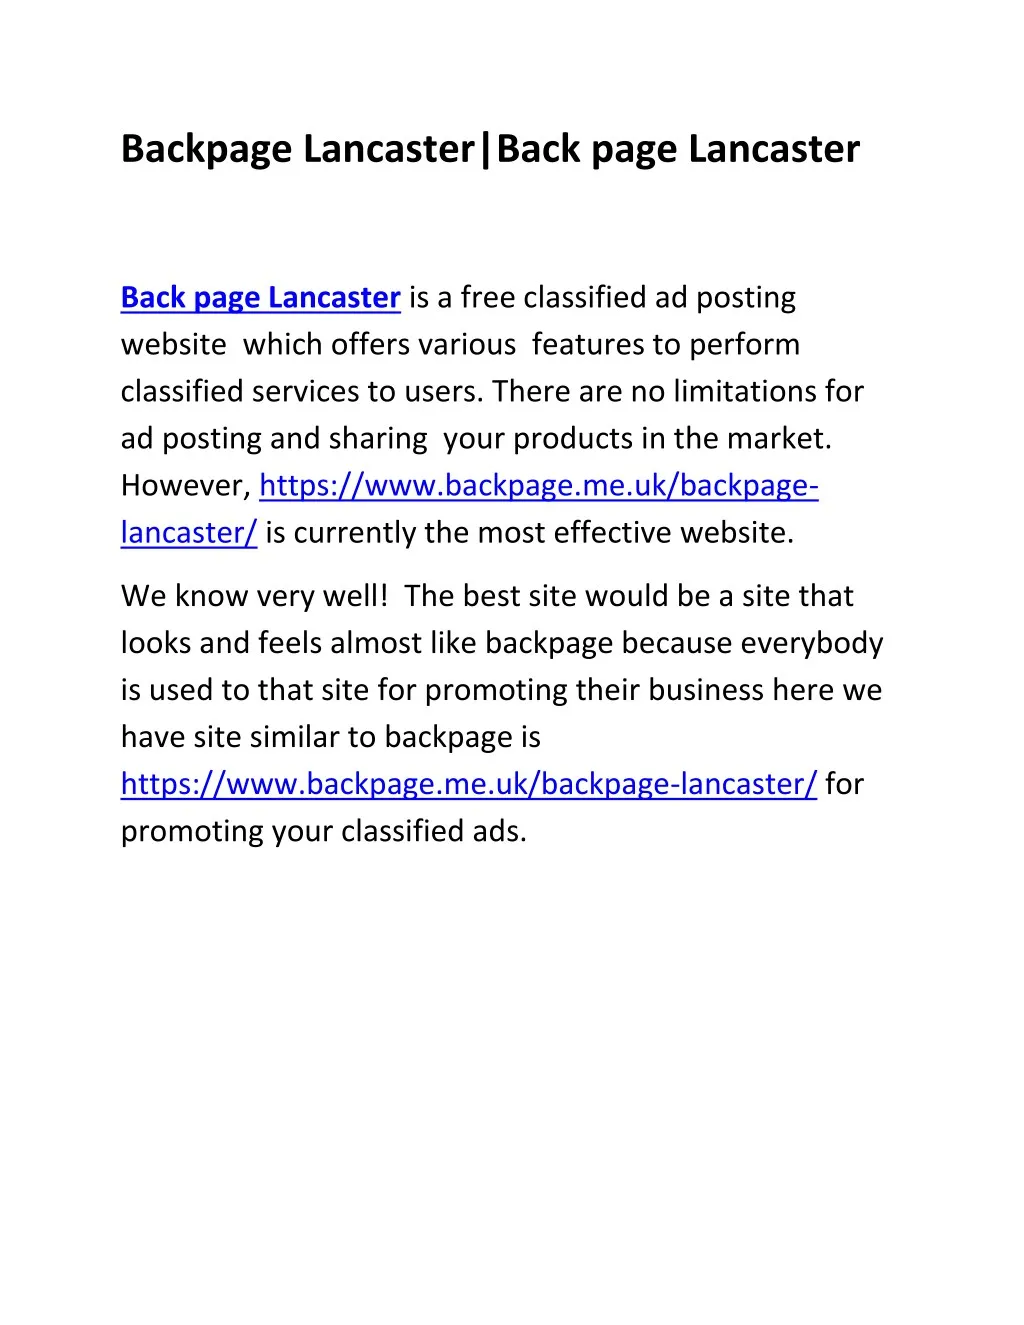 backpage lancaster back page lancaster